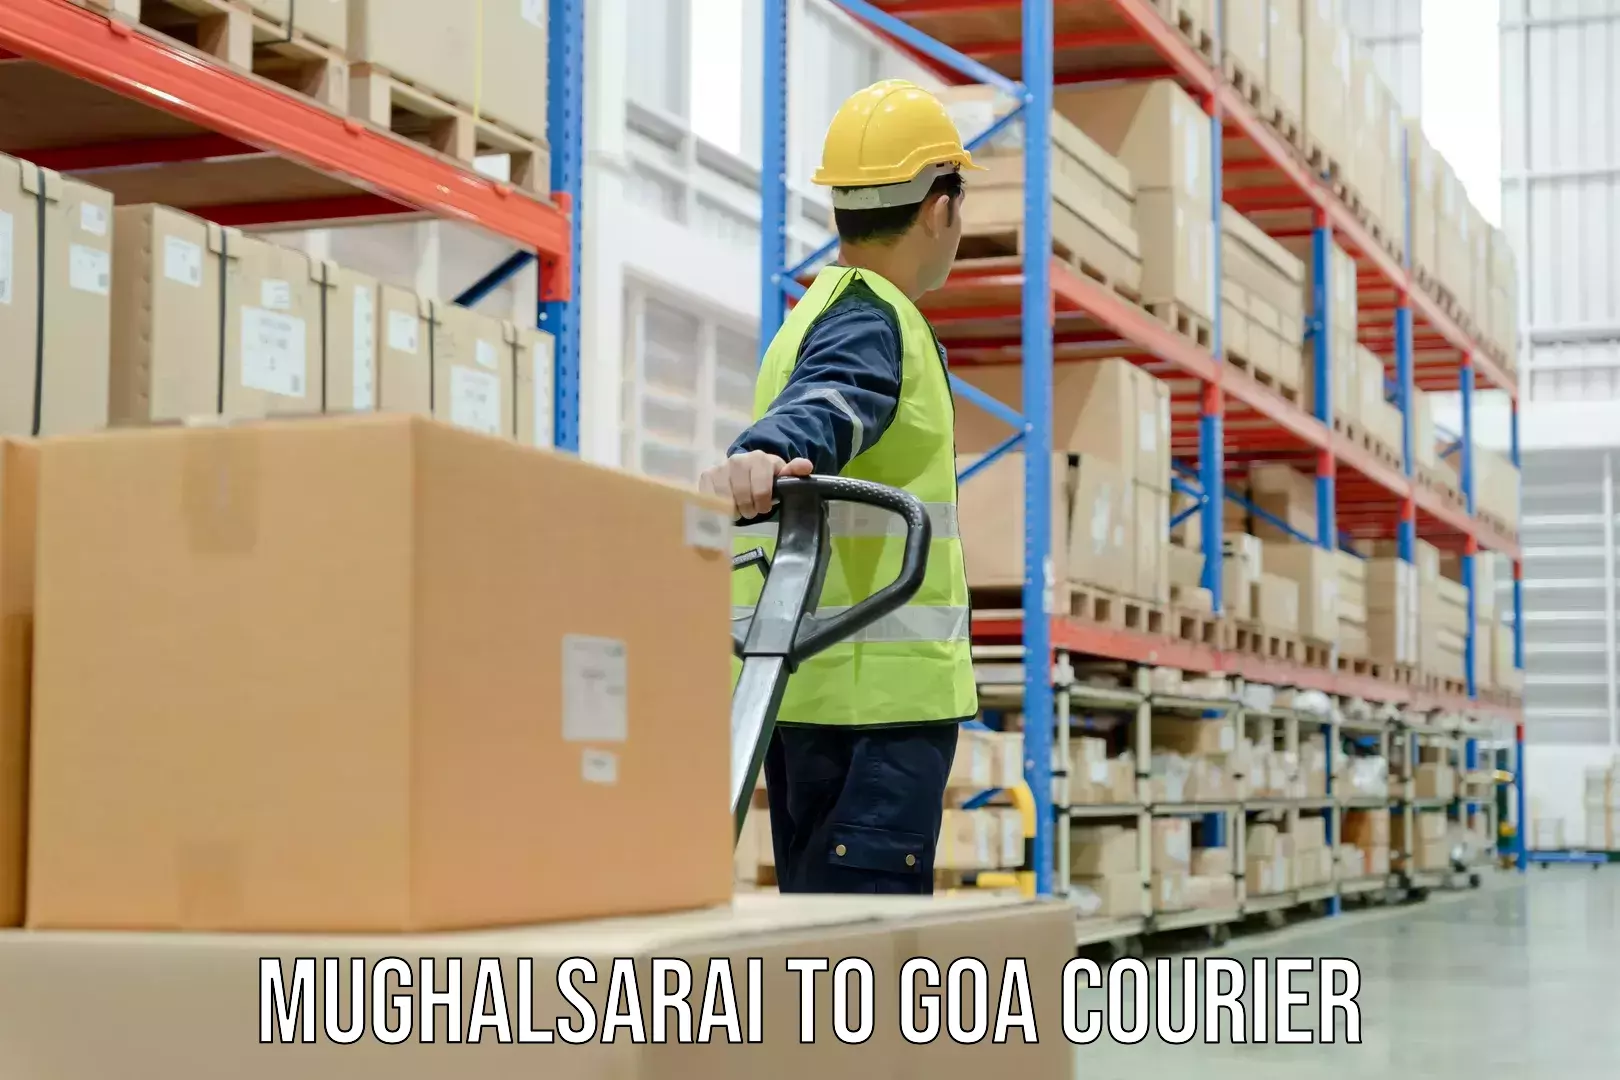 User-friendly courier app Mughalsarai to Goa